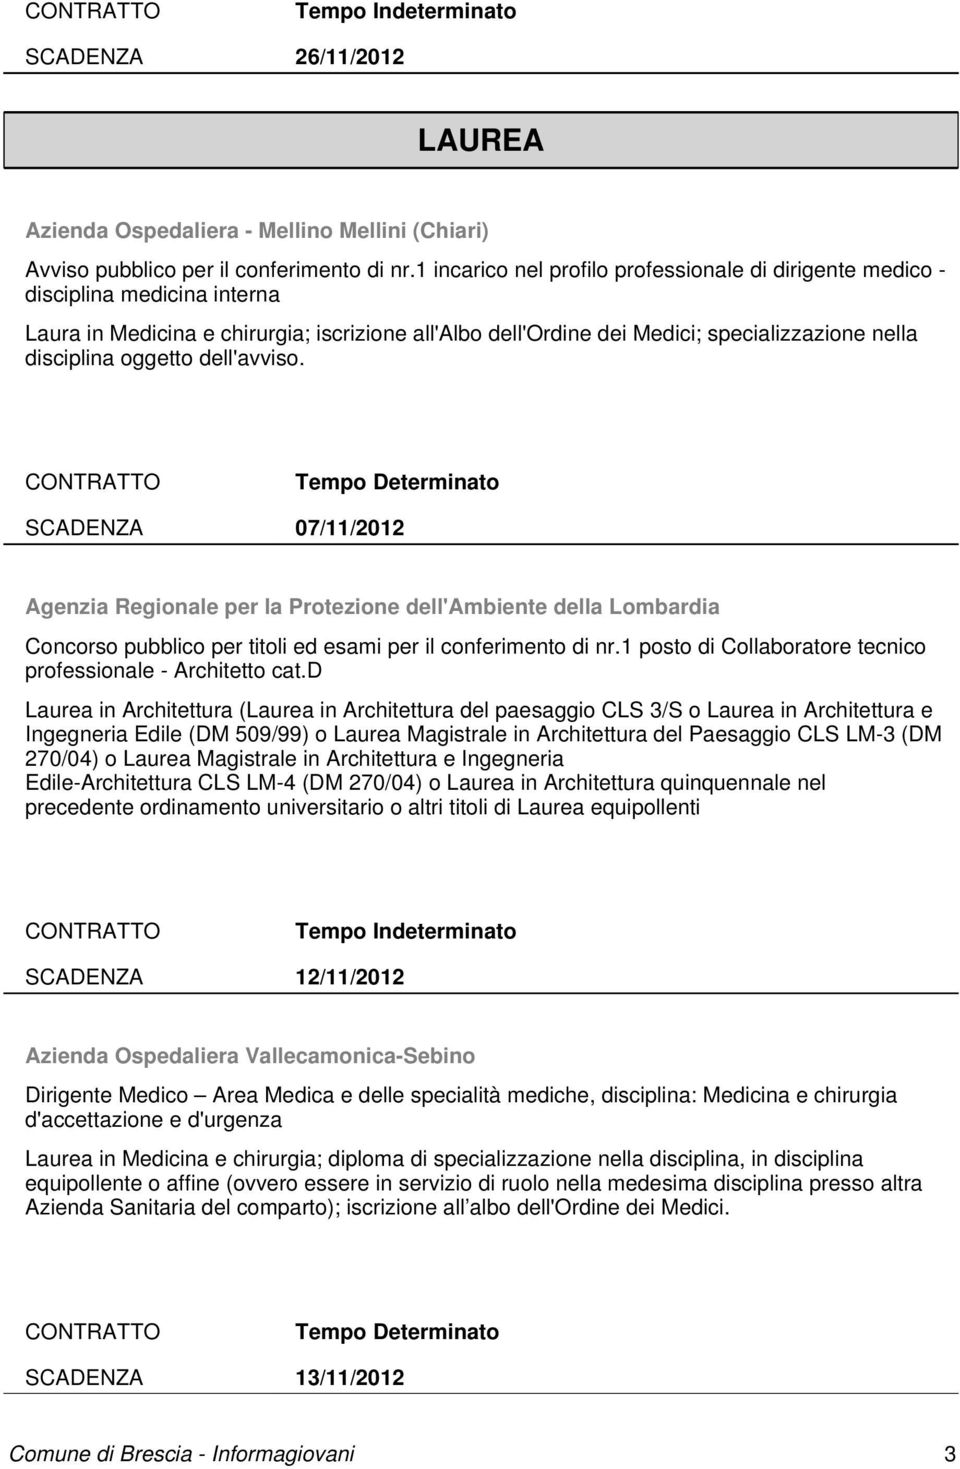 oggetto dell'avviso. SCADENZA 07/11/2012 Agenzia Regionale per la Protezione dell'ambiente della Lombardia Concorso pubblico per titoli ed esami per il conferimento di nr.